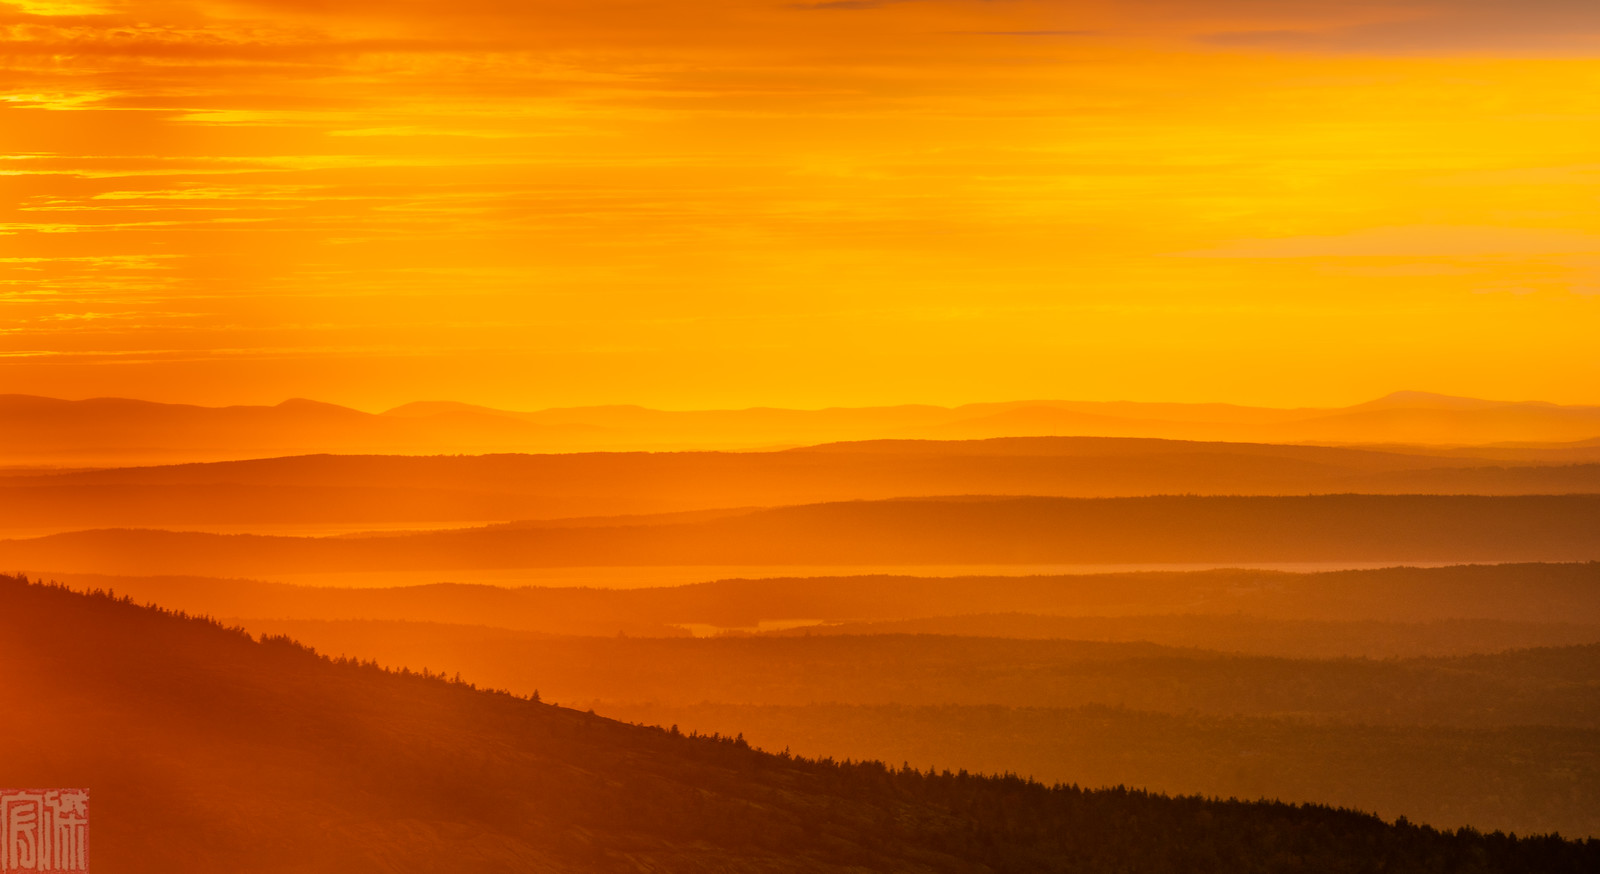 Fall Sunrise_Acadia National Park_Photographer Hongjie Liu